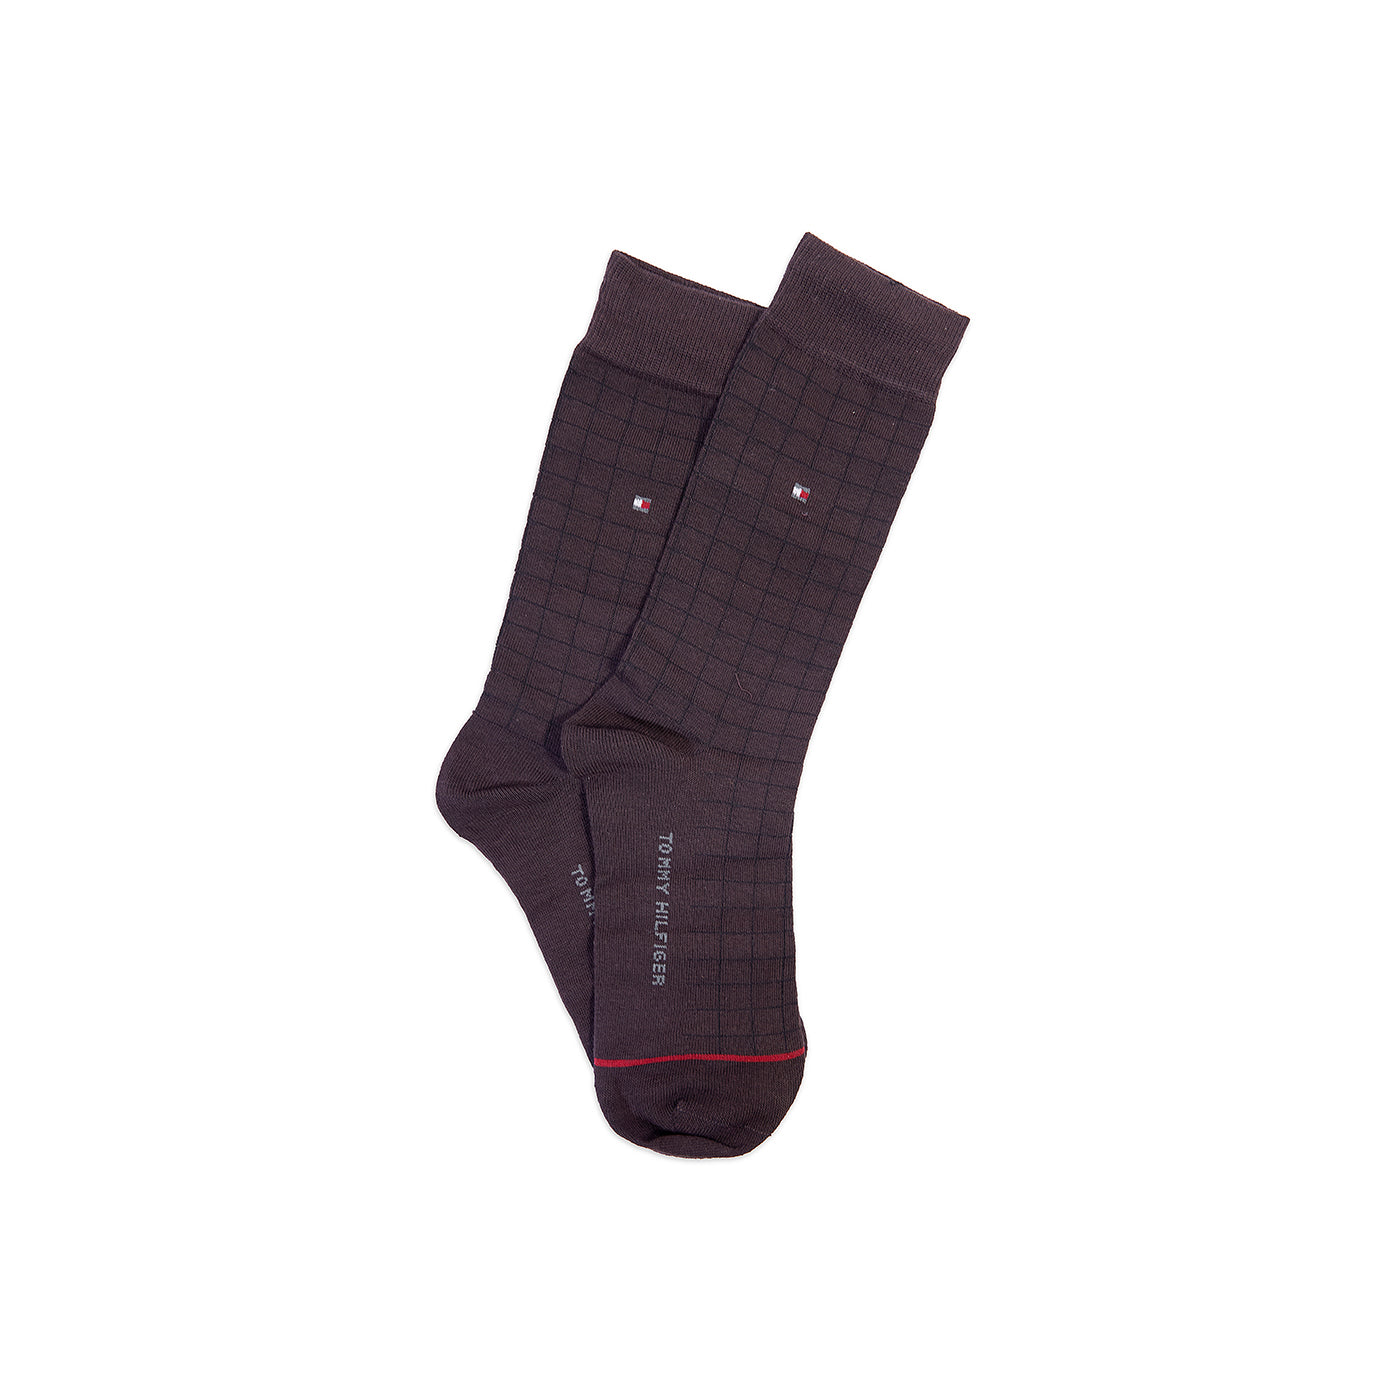 TMS Branded T-o-m-m-y Formal Full Socks (pack of 5)